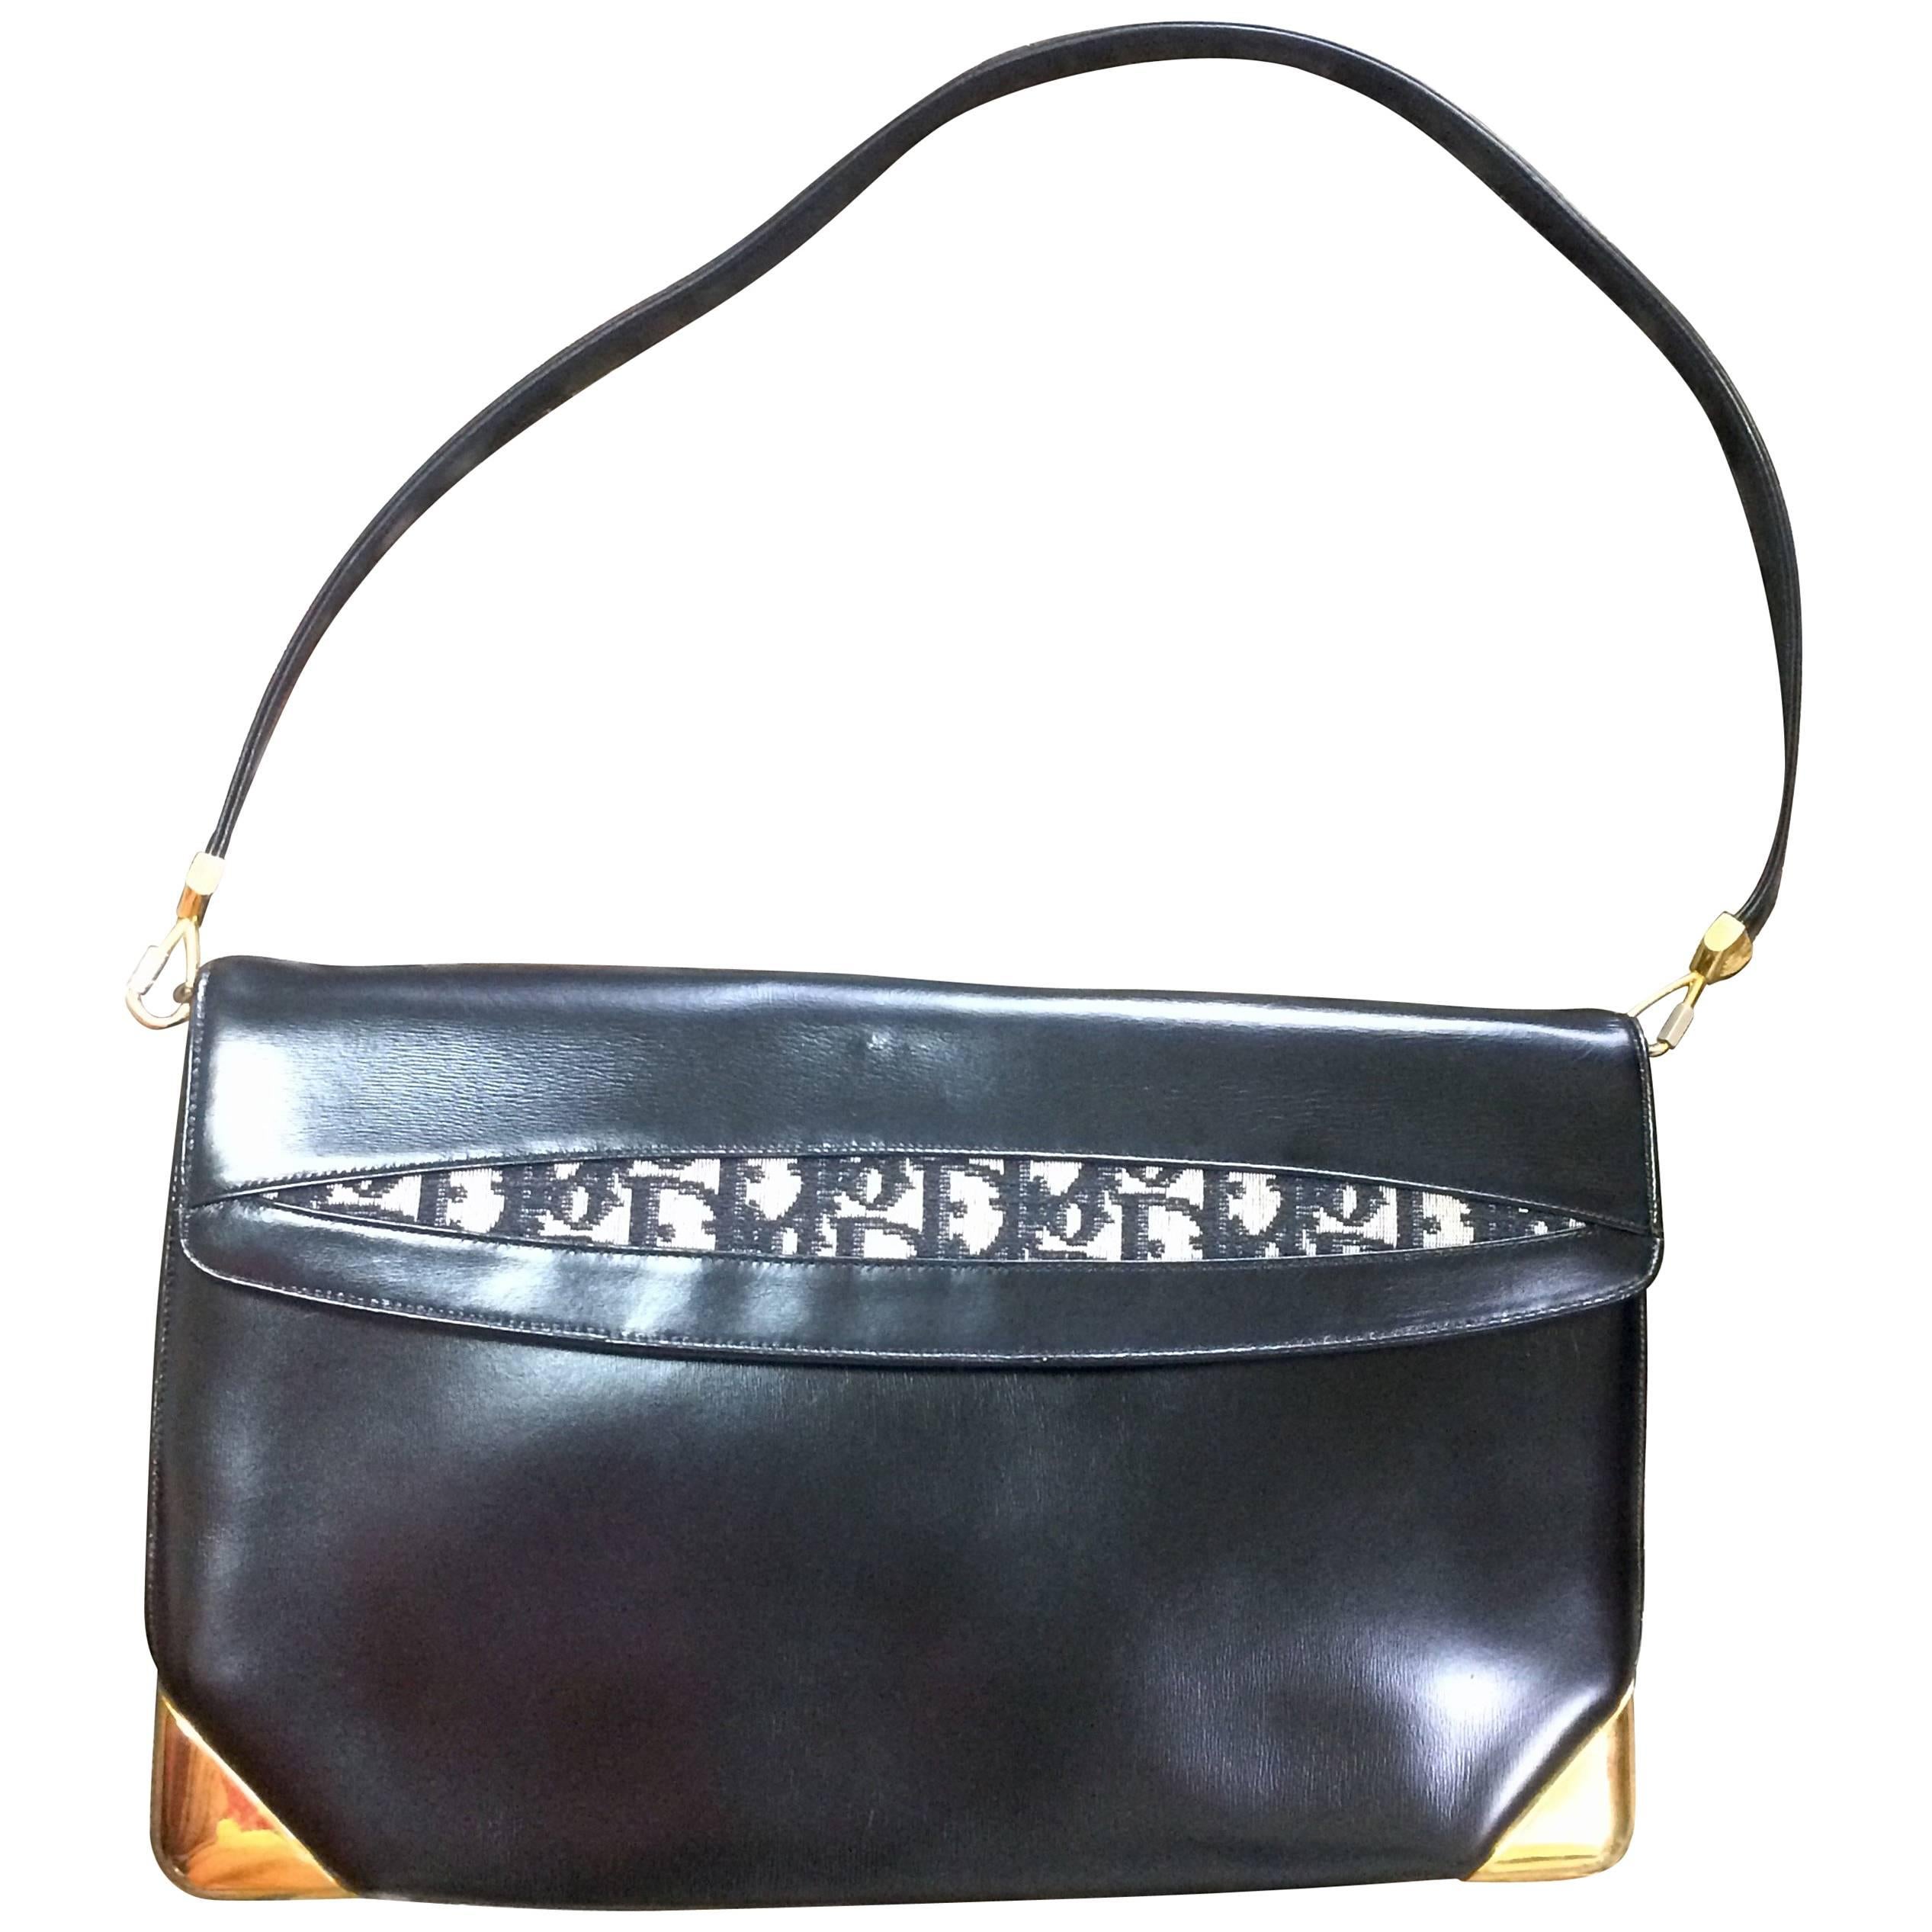 Vintage Christian Dior black leather large clutch, shoulder bag with trotter.